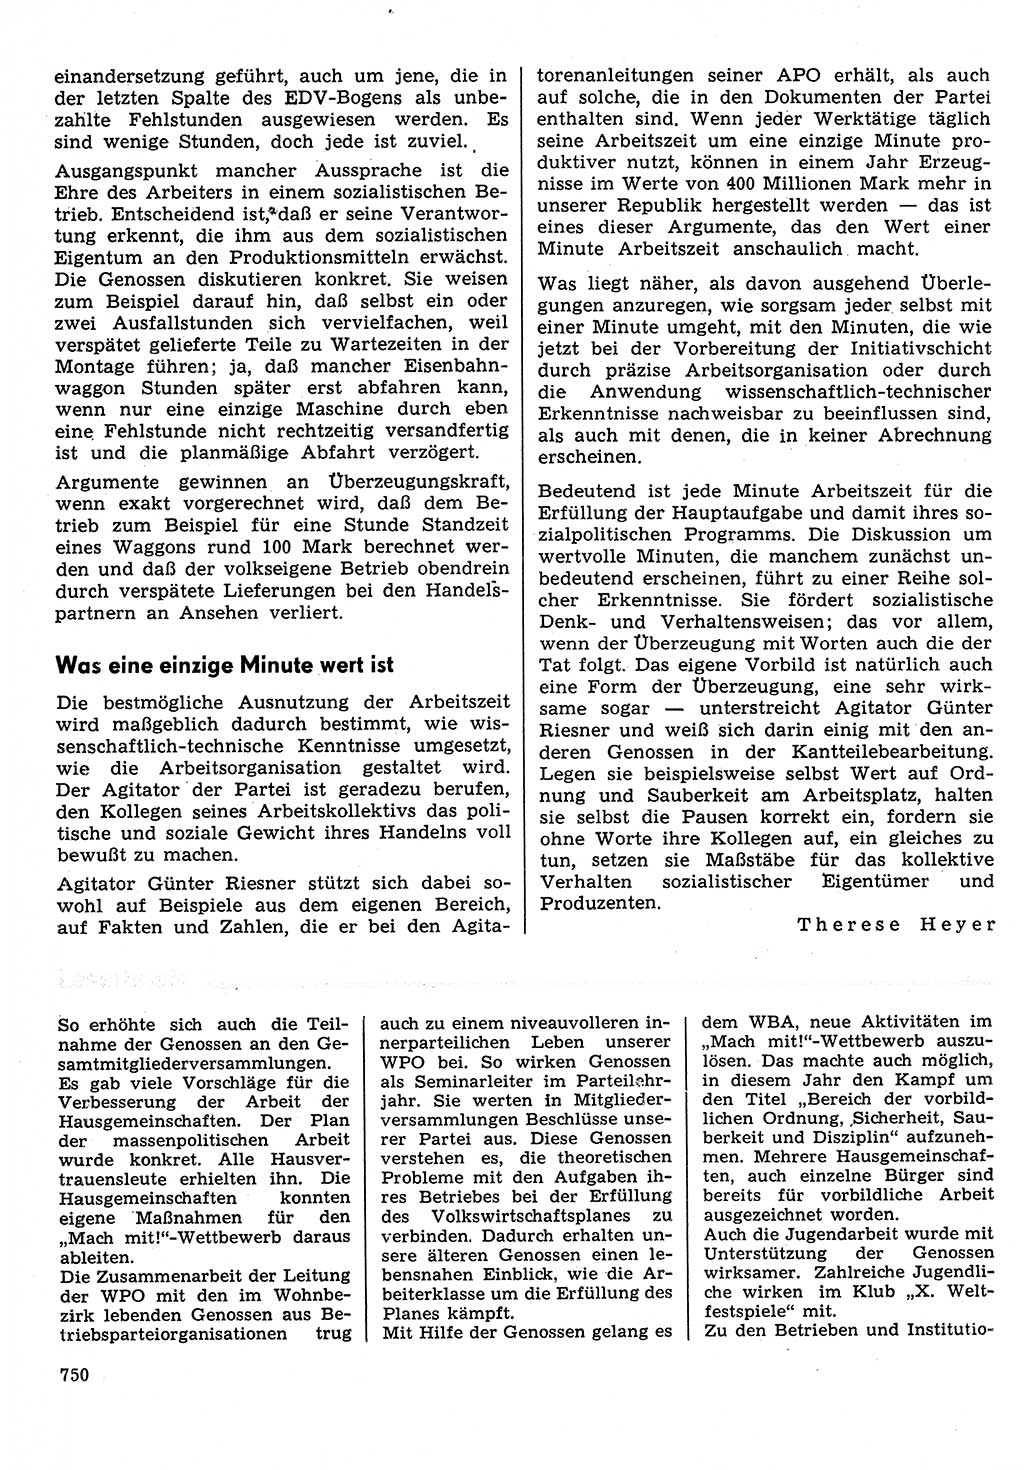 Neuer Weg (NW), Organ des Zentralkomitees (ZK) der SED (Sozialistische Einheitspartei Deutschlands) für Fragen des Parteilebens, 30. Jahrgang [Deutsche Demokratische Republik (DDR)] 1975, Seite 750 (NW ZK SED DDR 1975, S. 750)